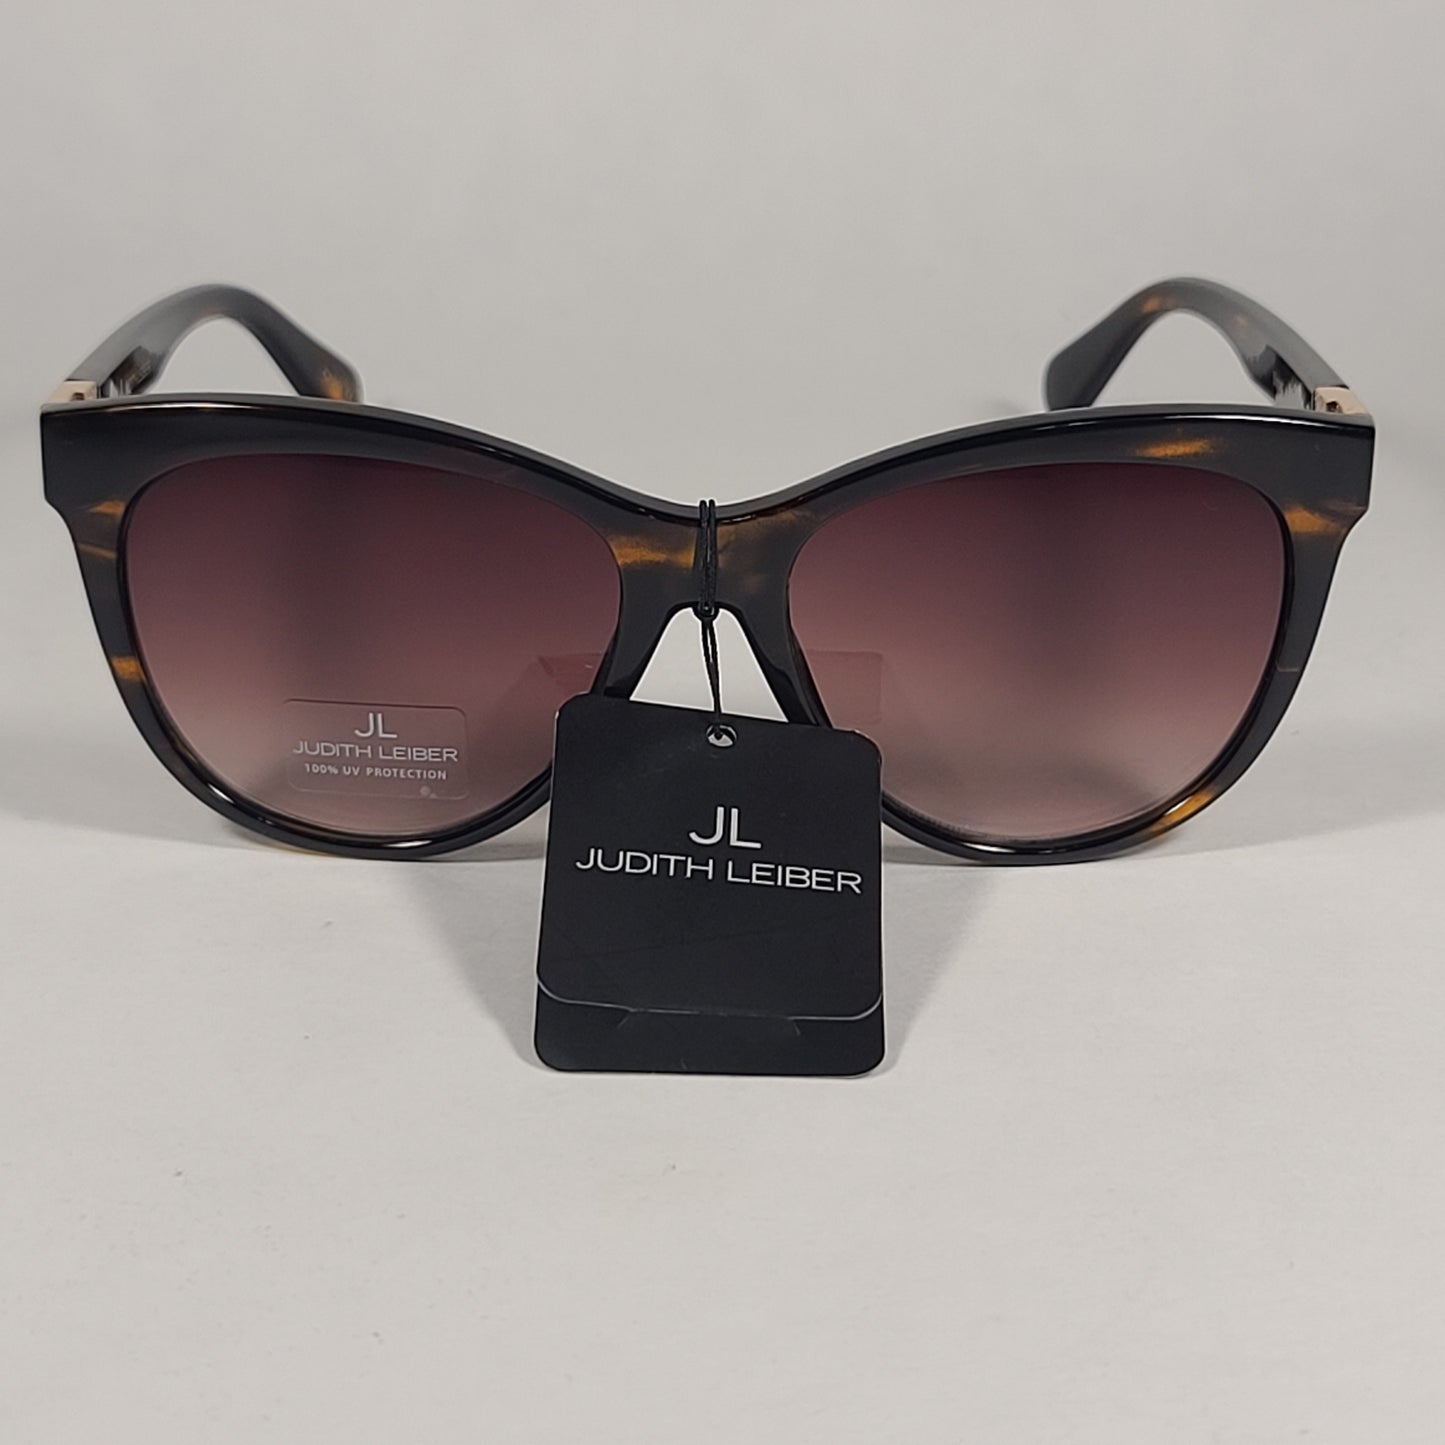 JL By Judith Leiber Slipper Sunglasses Brown Tortoise Gradient Lens - Sunglasses